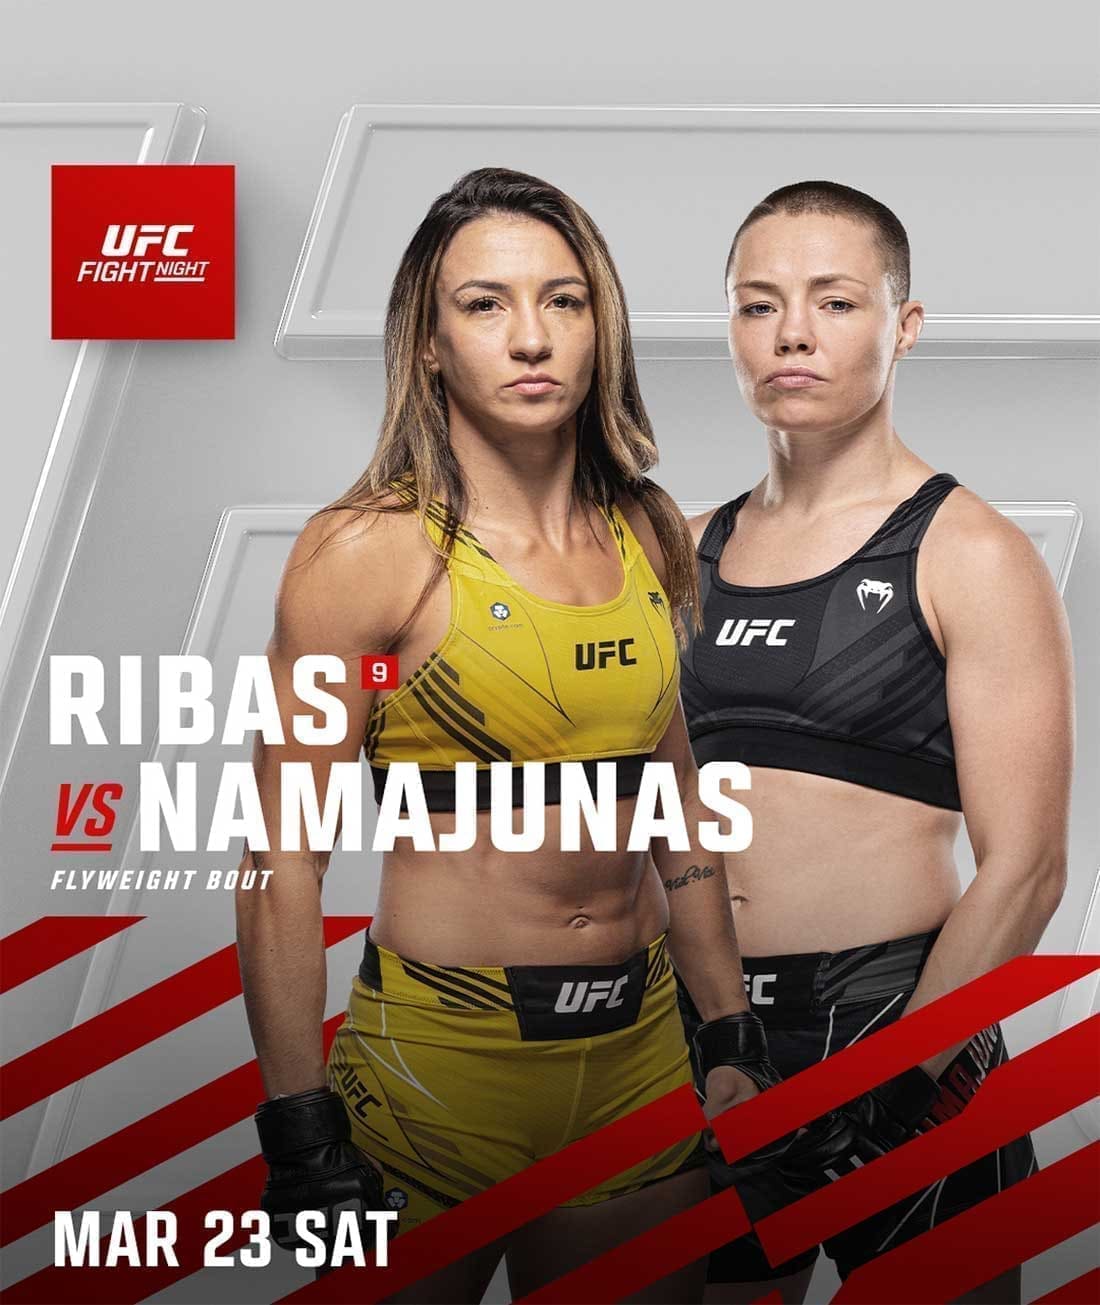 UFC on ESPN 53: Рибас - Намаюнас дата проведения, кард, участники и результаты